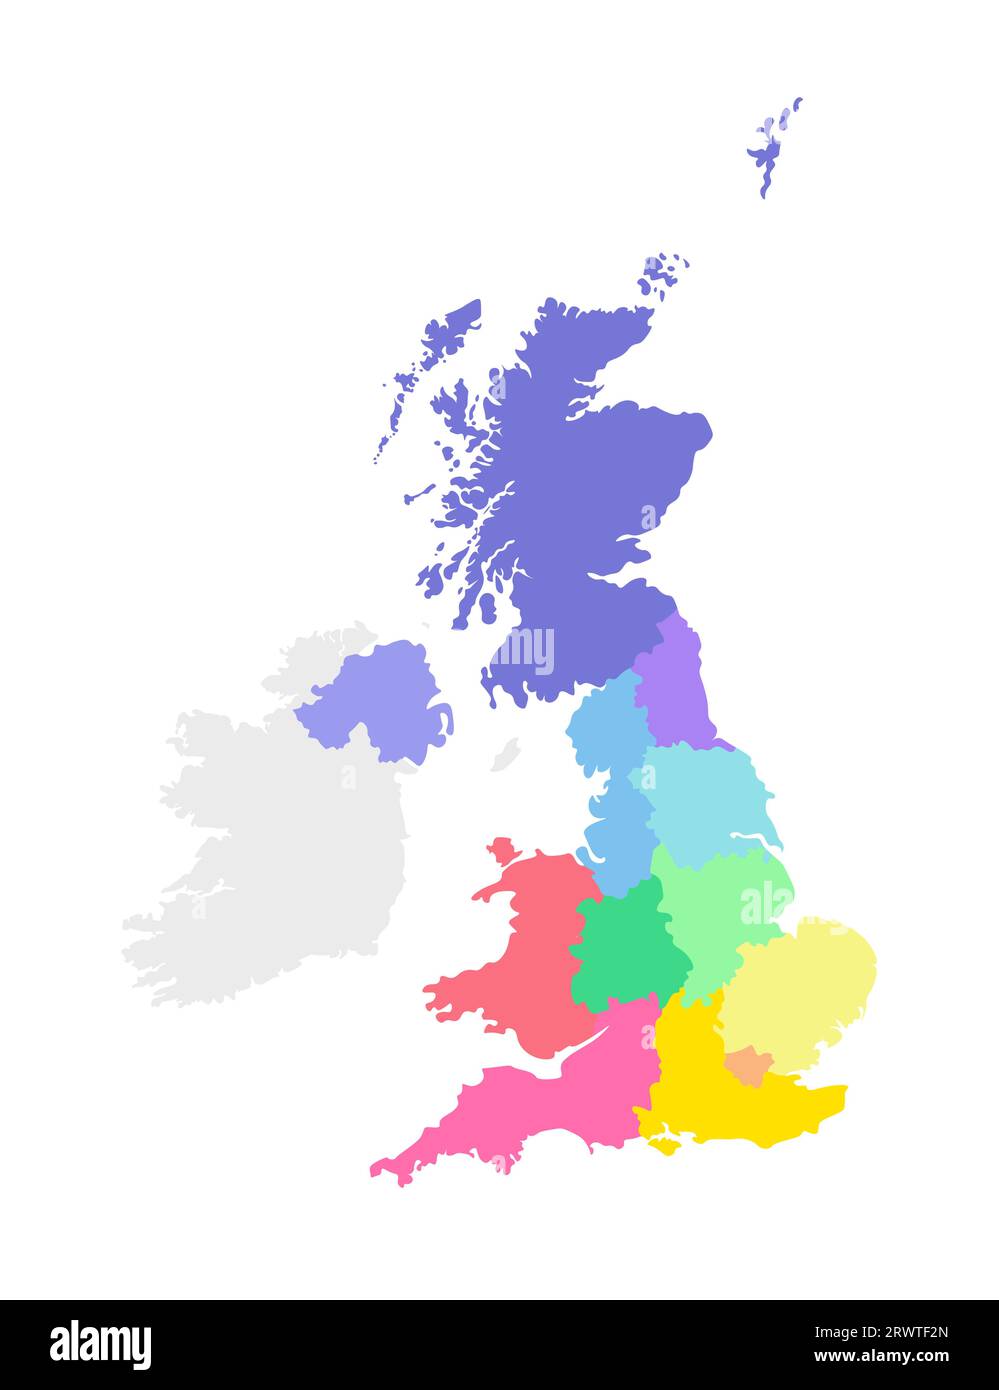 Illustrazione vettoriale isolata della mappa amministrativa semplificata del Regno Unito di Gran Bretagna e Irlanda del Nord. Confini delle regioni. Mul Illustrazione Vettoriale